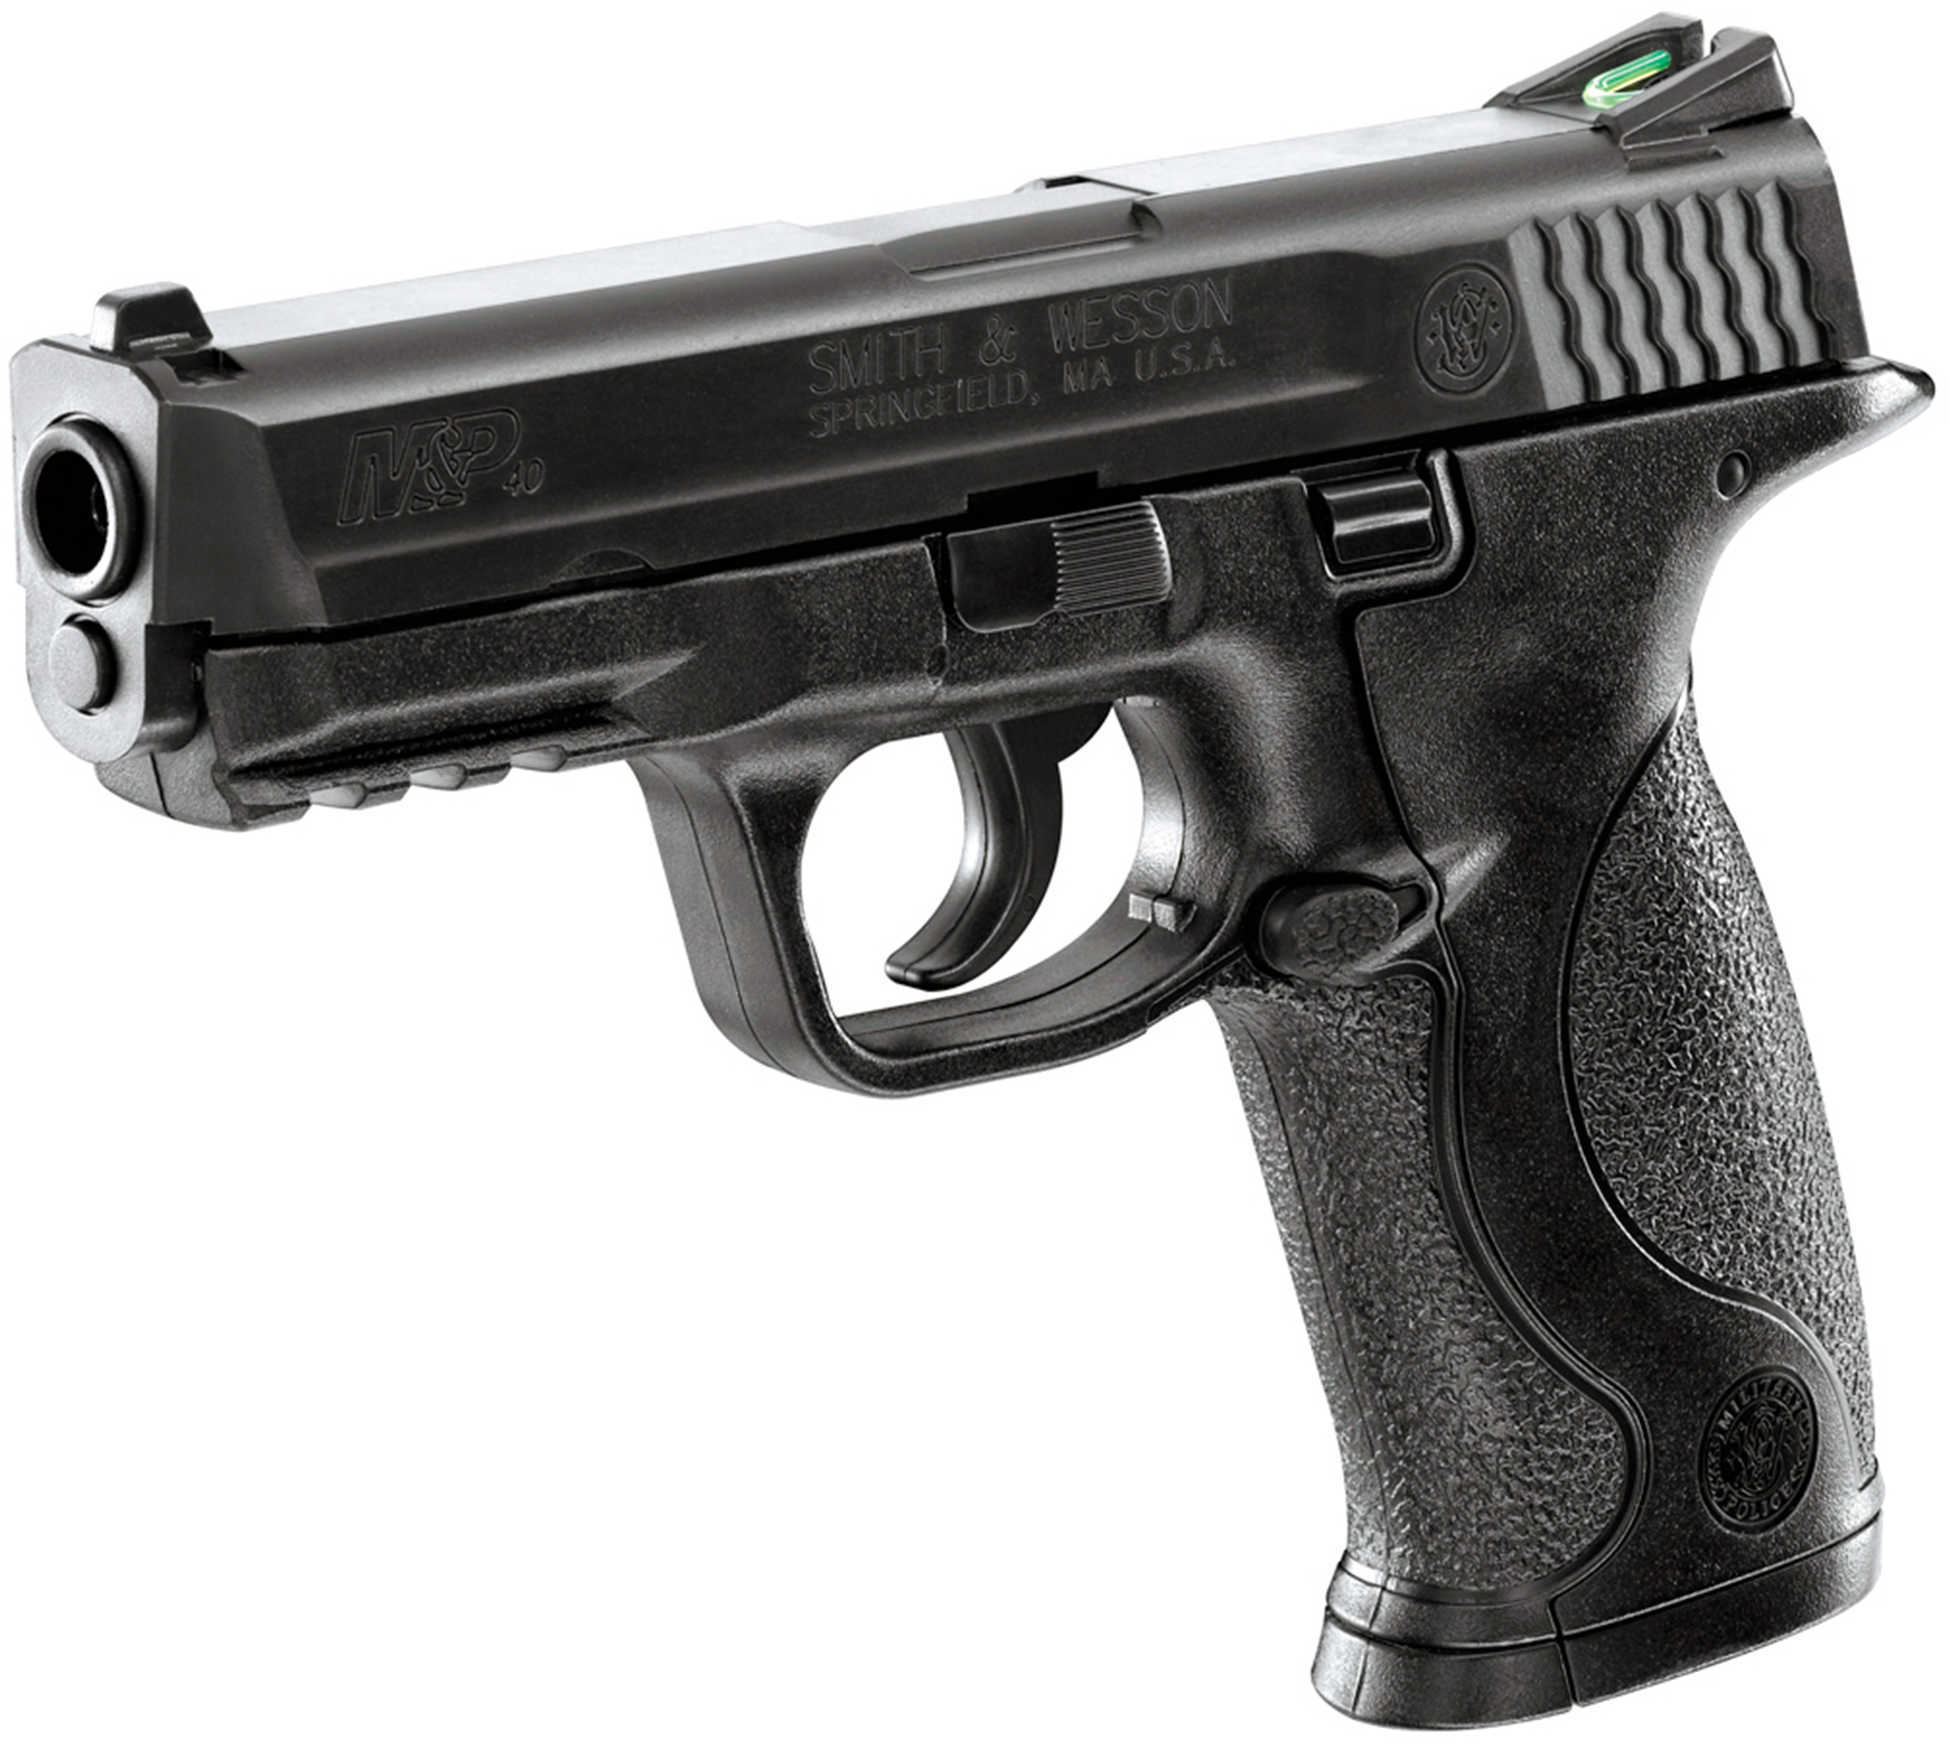 Umarex Smith & Wesson M&P BB Pistol Black Finish Semi-Auto Co2 Md: 2255050